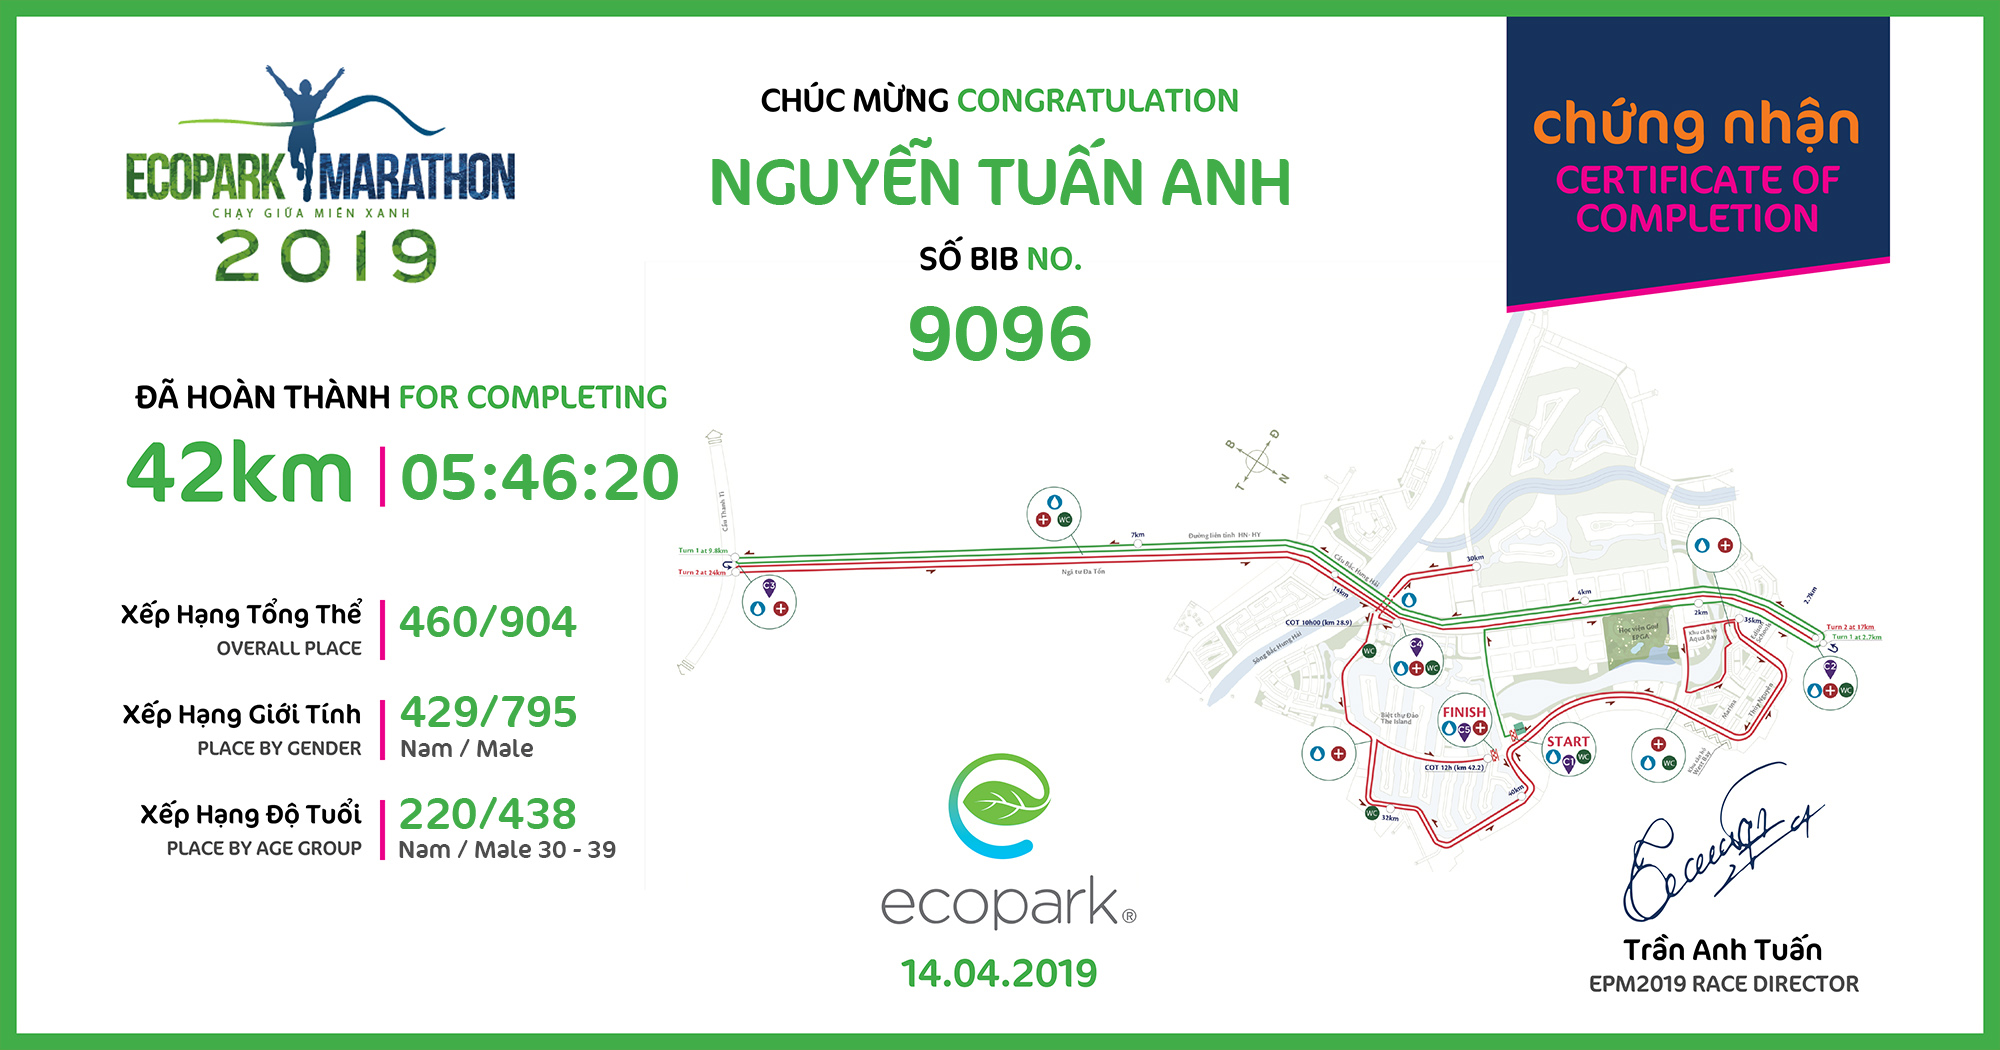 9096 - Nguyễn Tuấn Anh